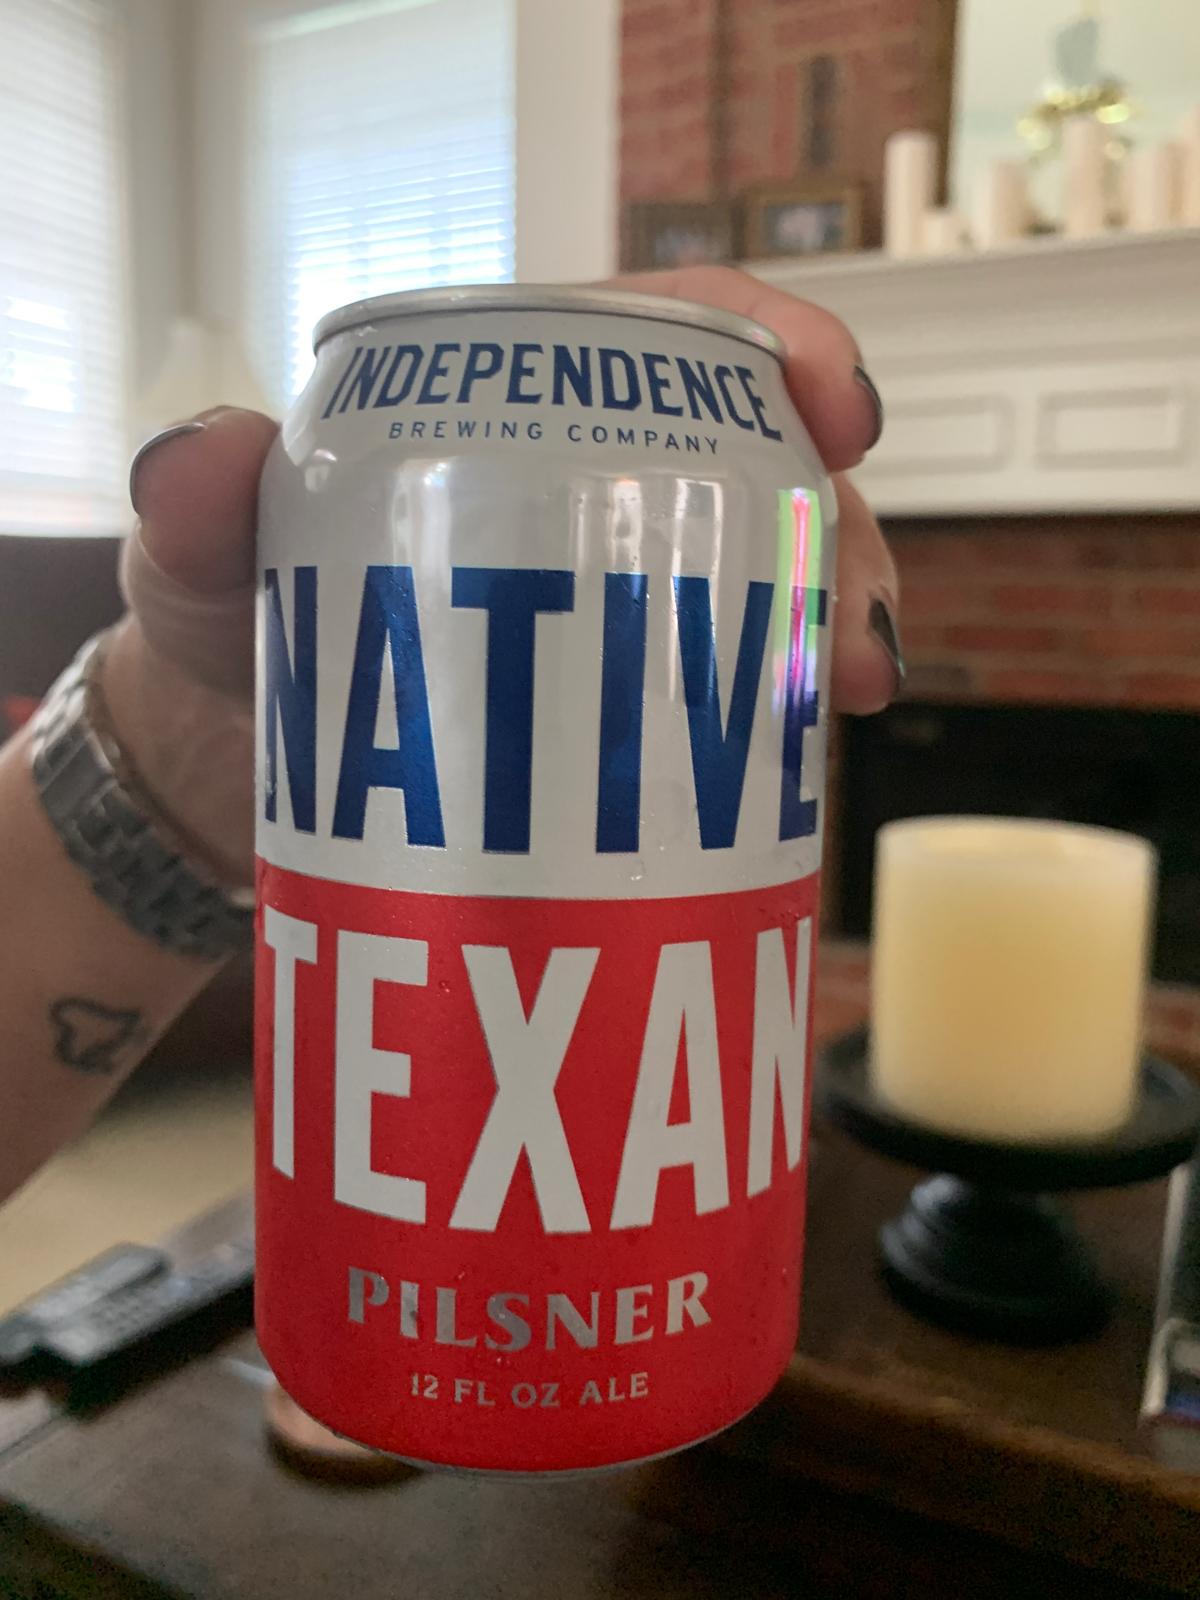 Native Texan